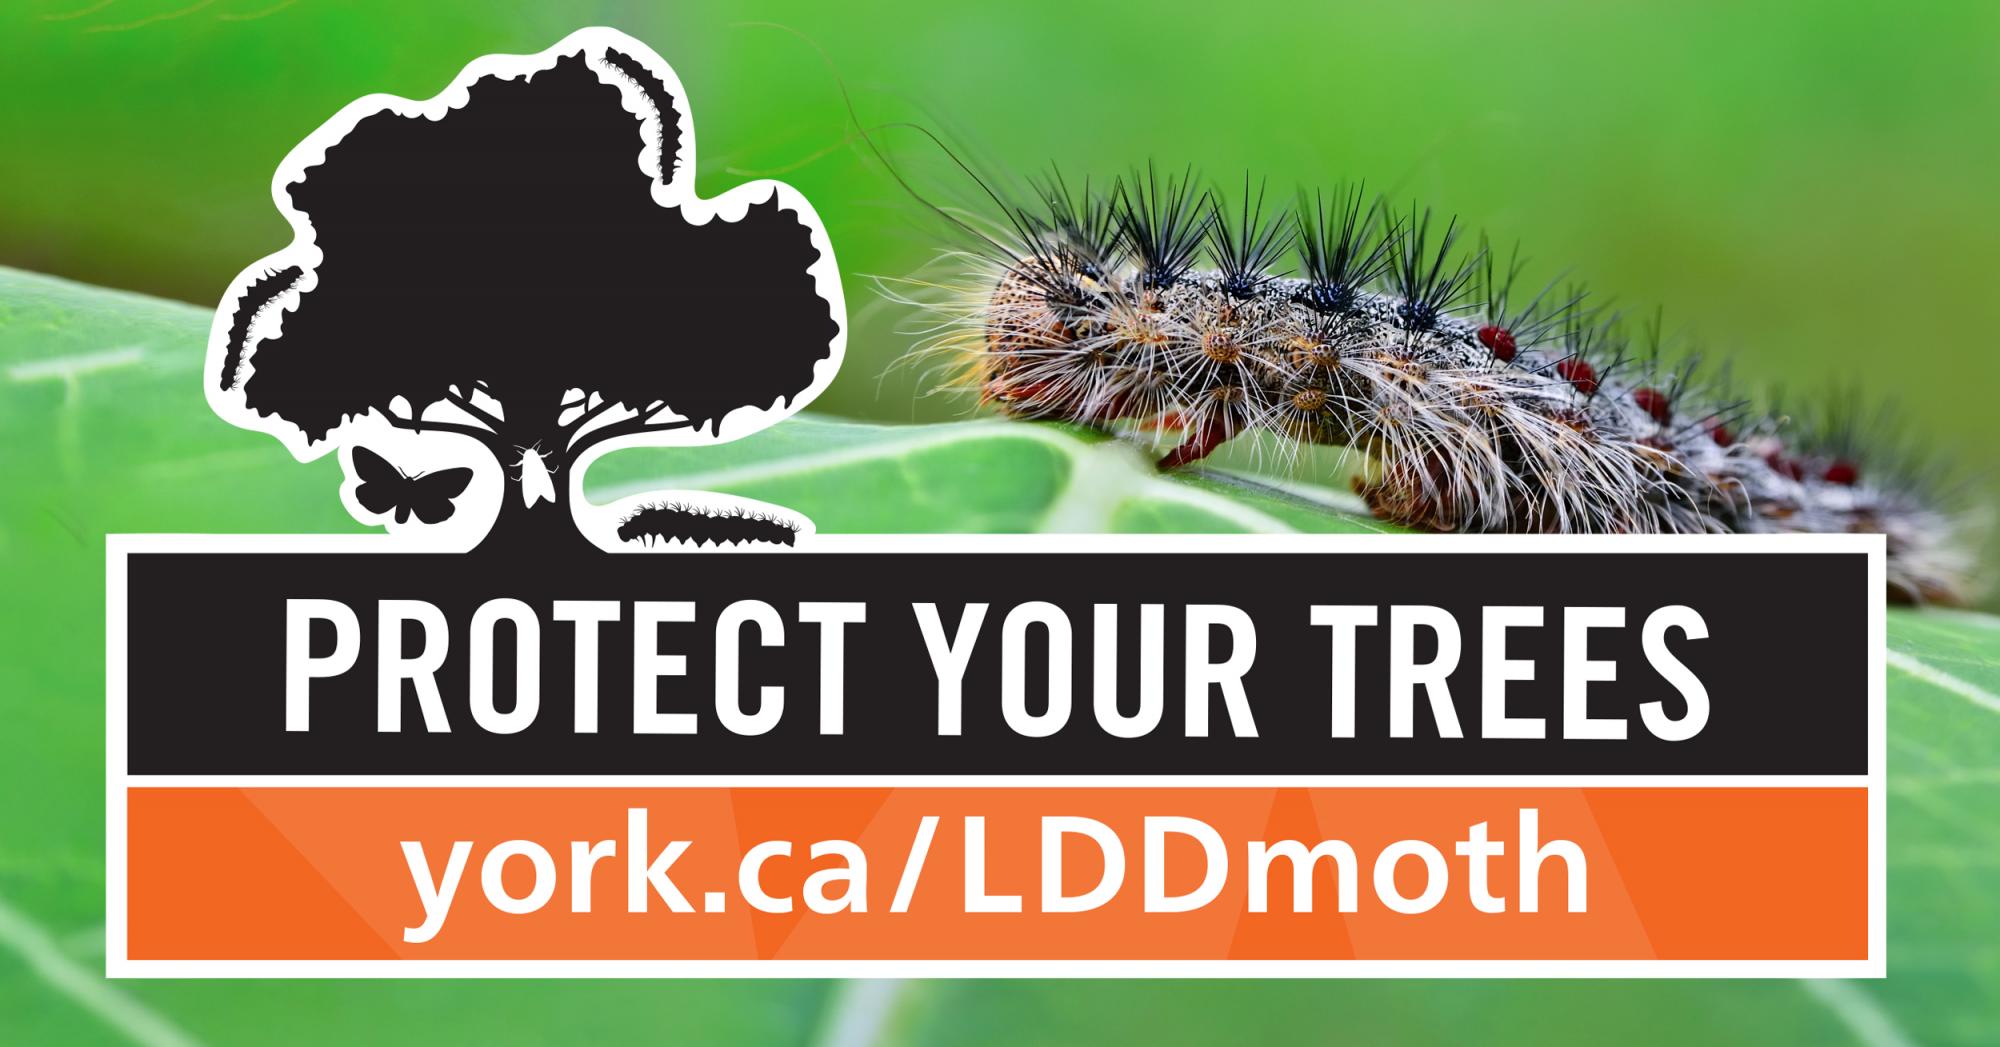 LDD Moth York Region Website 